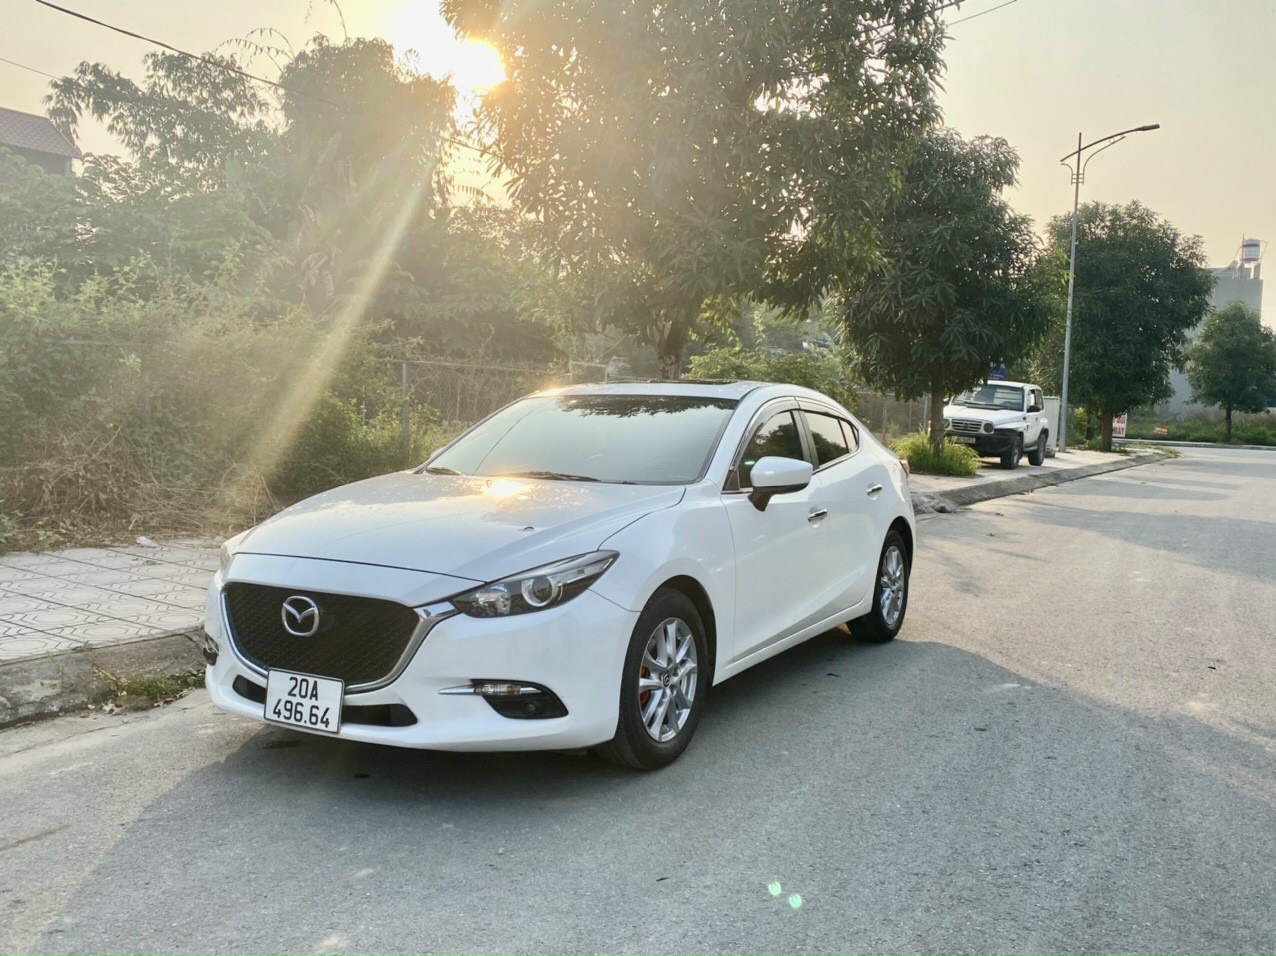 Chính Chủ Bán Xe gia đình sử dụng, còn rất mới, Mazda 3 màu trắng 1.5L sản xuất 2019 .Nội/Ngoại thất đẹp, xe đi được hơn 5v.